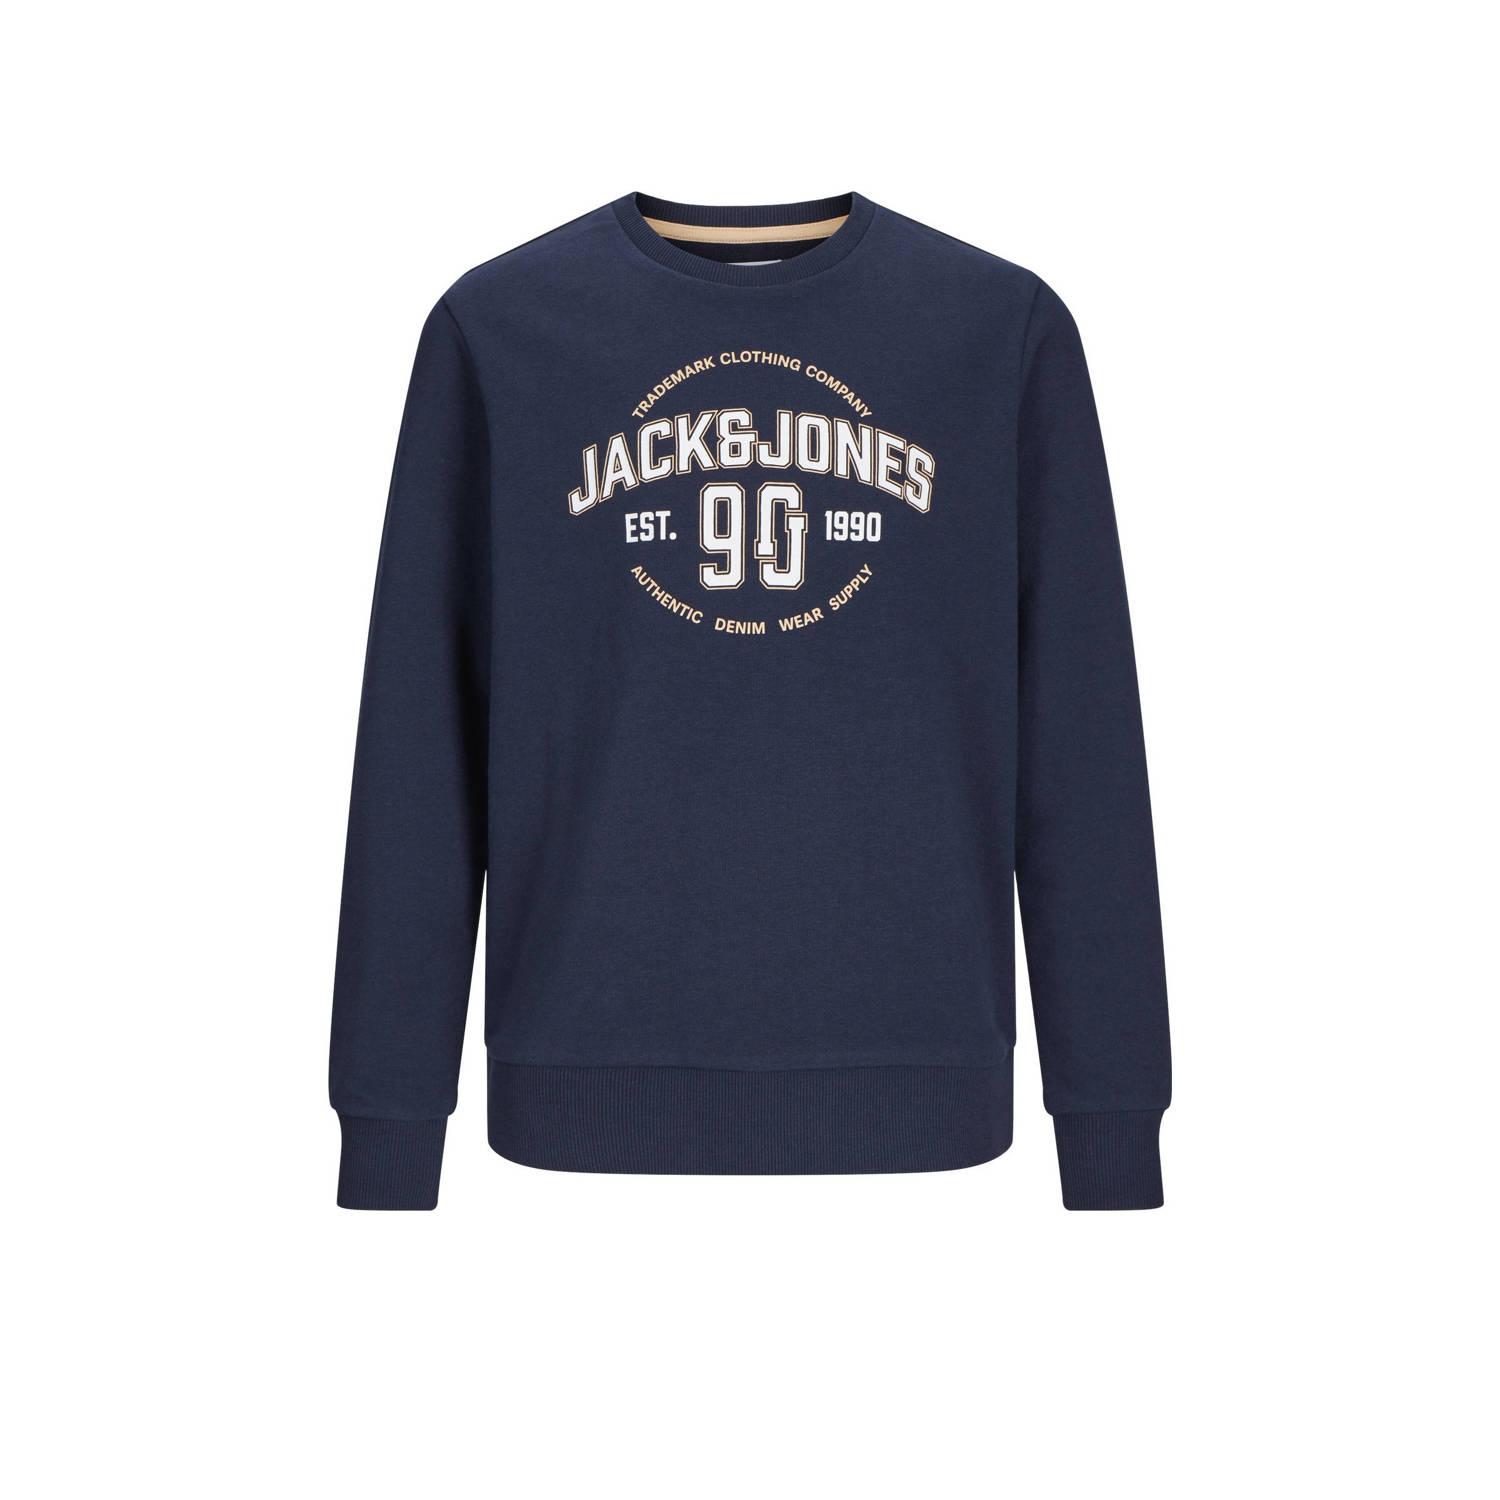 JACK & JONES JUNIOR sweater JJMINDS met logo donkerblauw